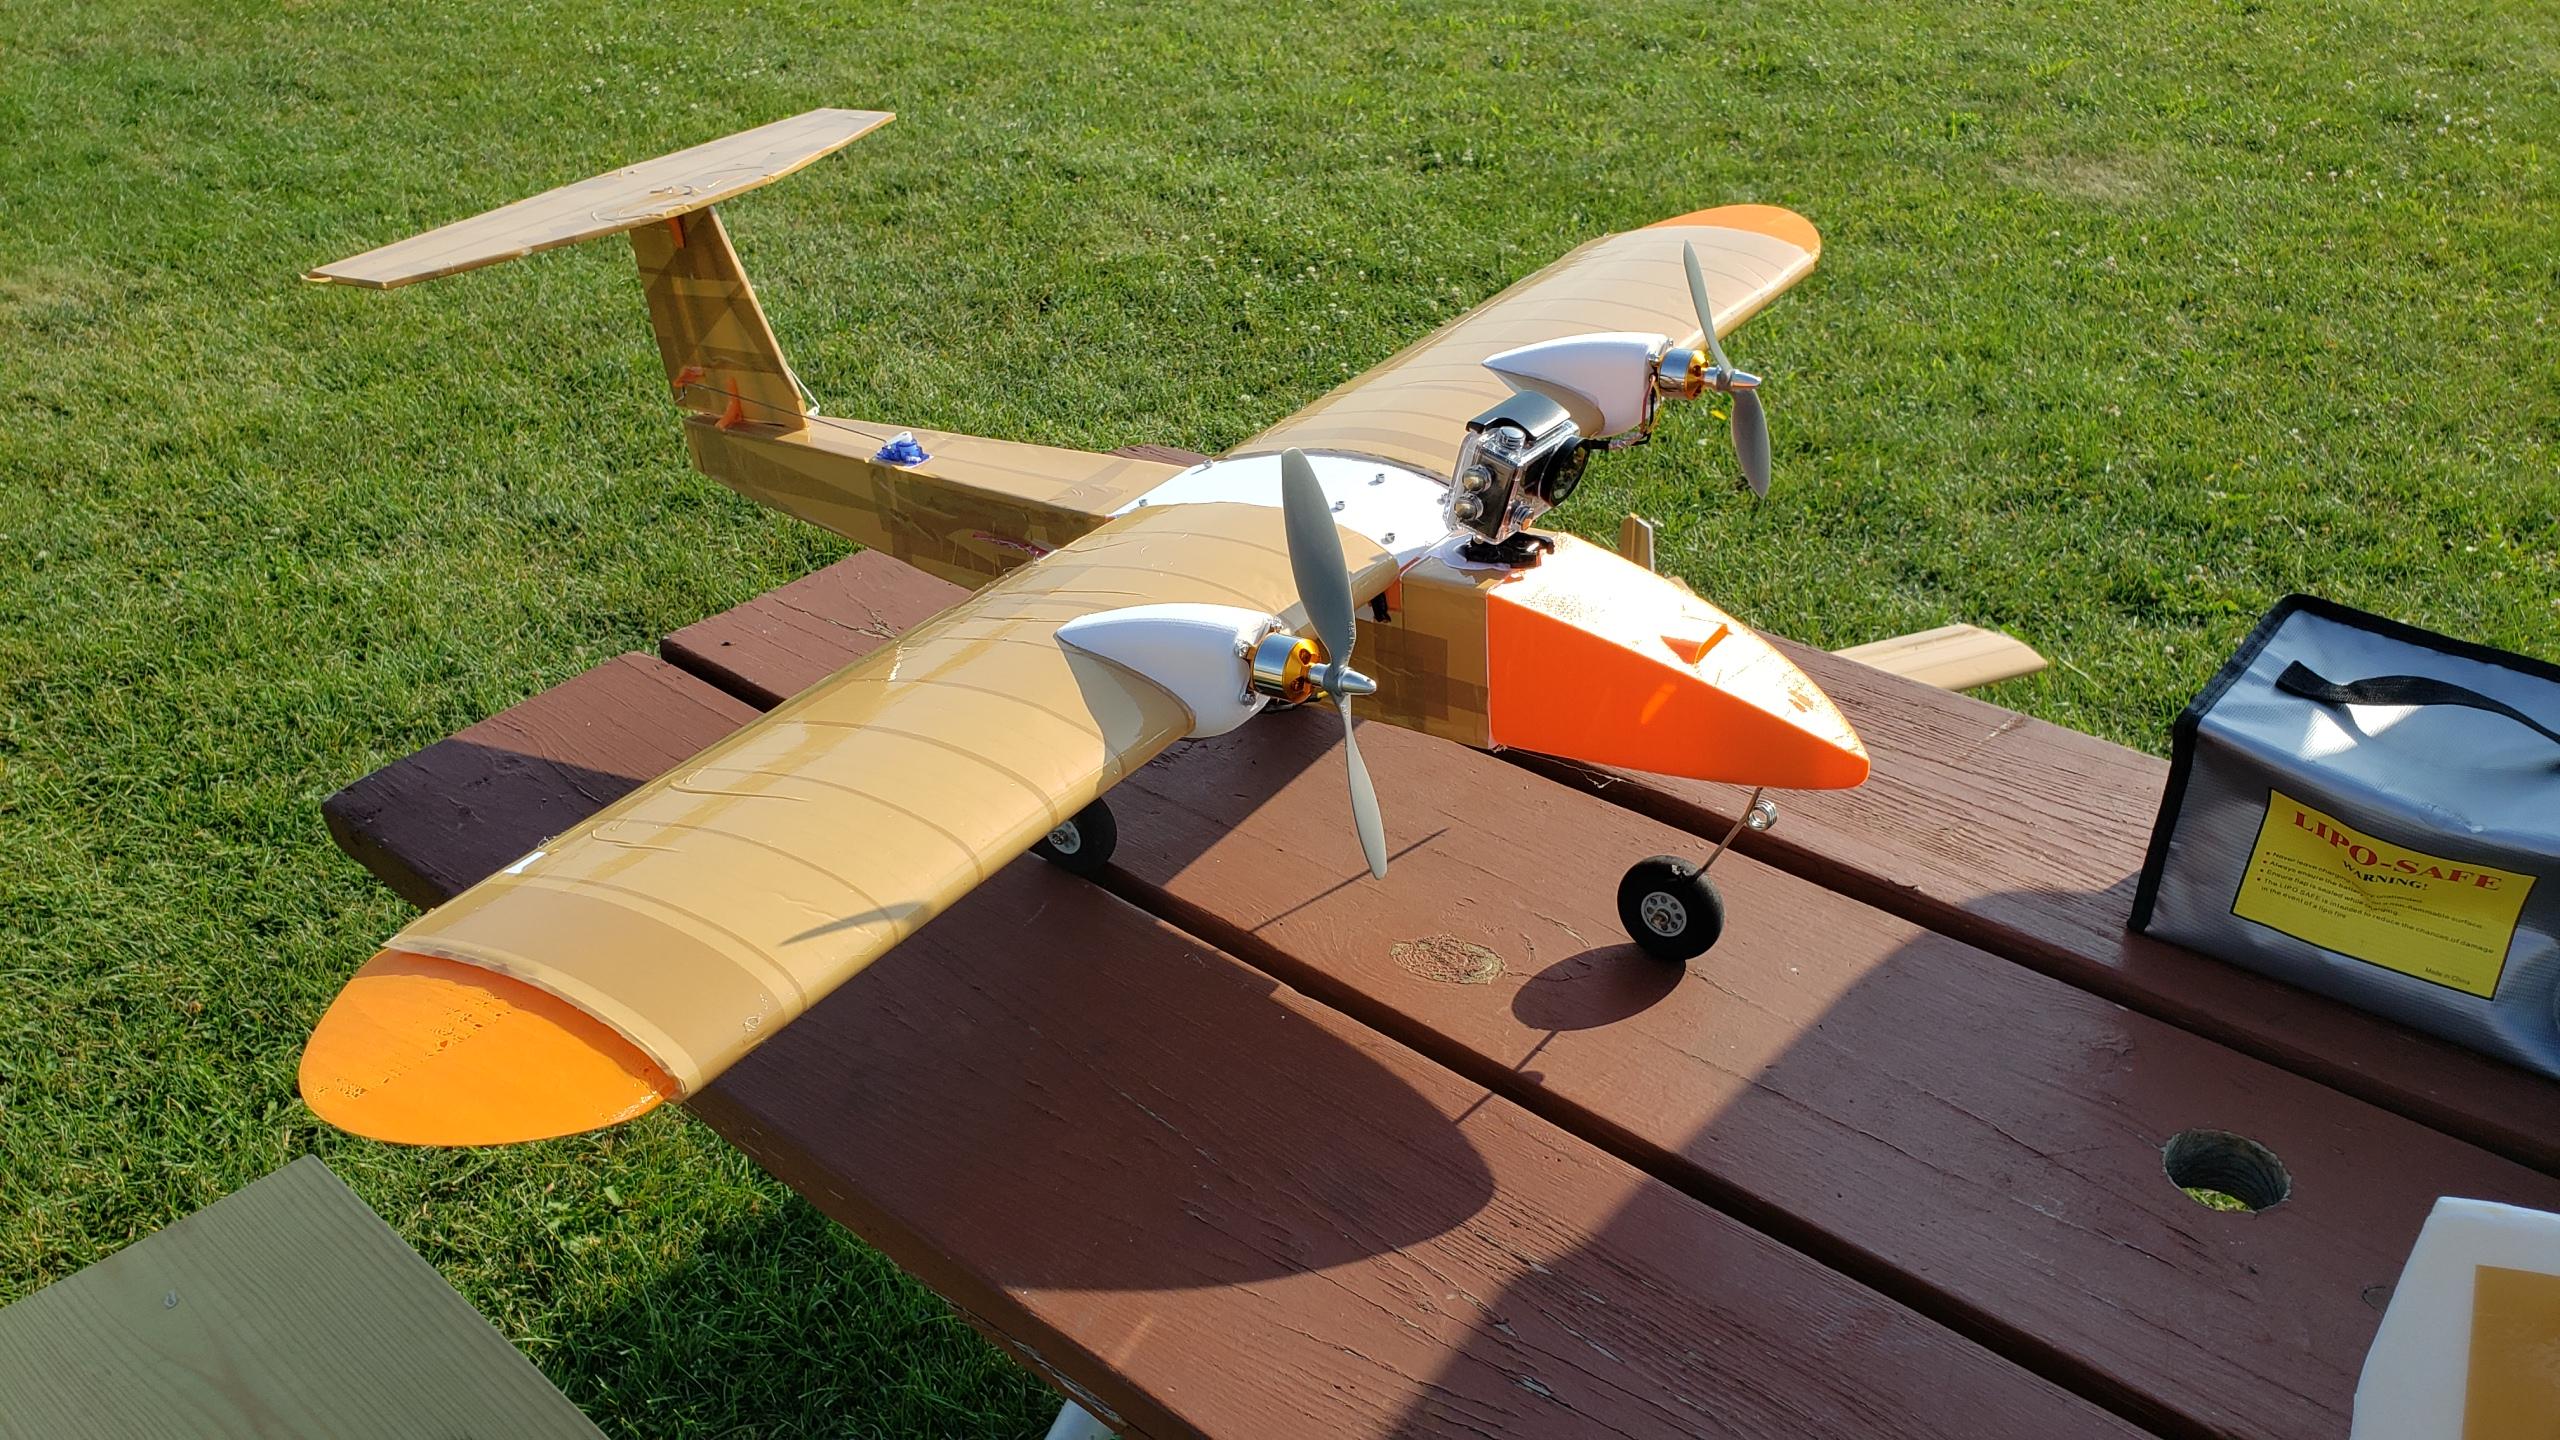 Rc 3D Foam Plane: Components of an RC 3D Foam Plane